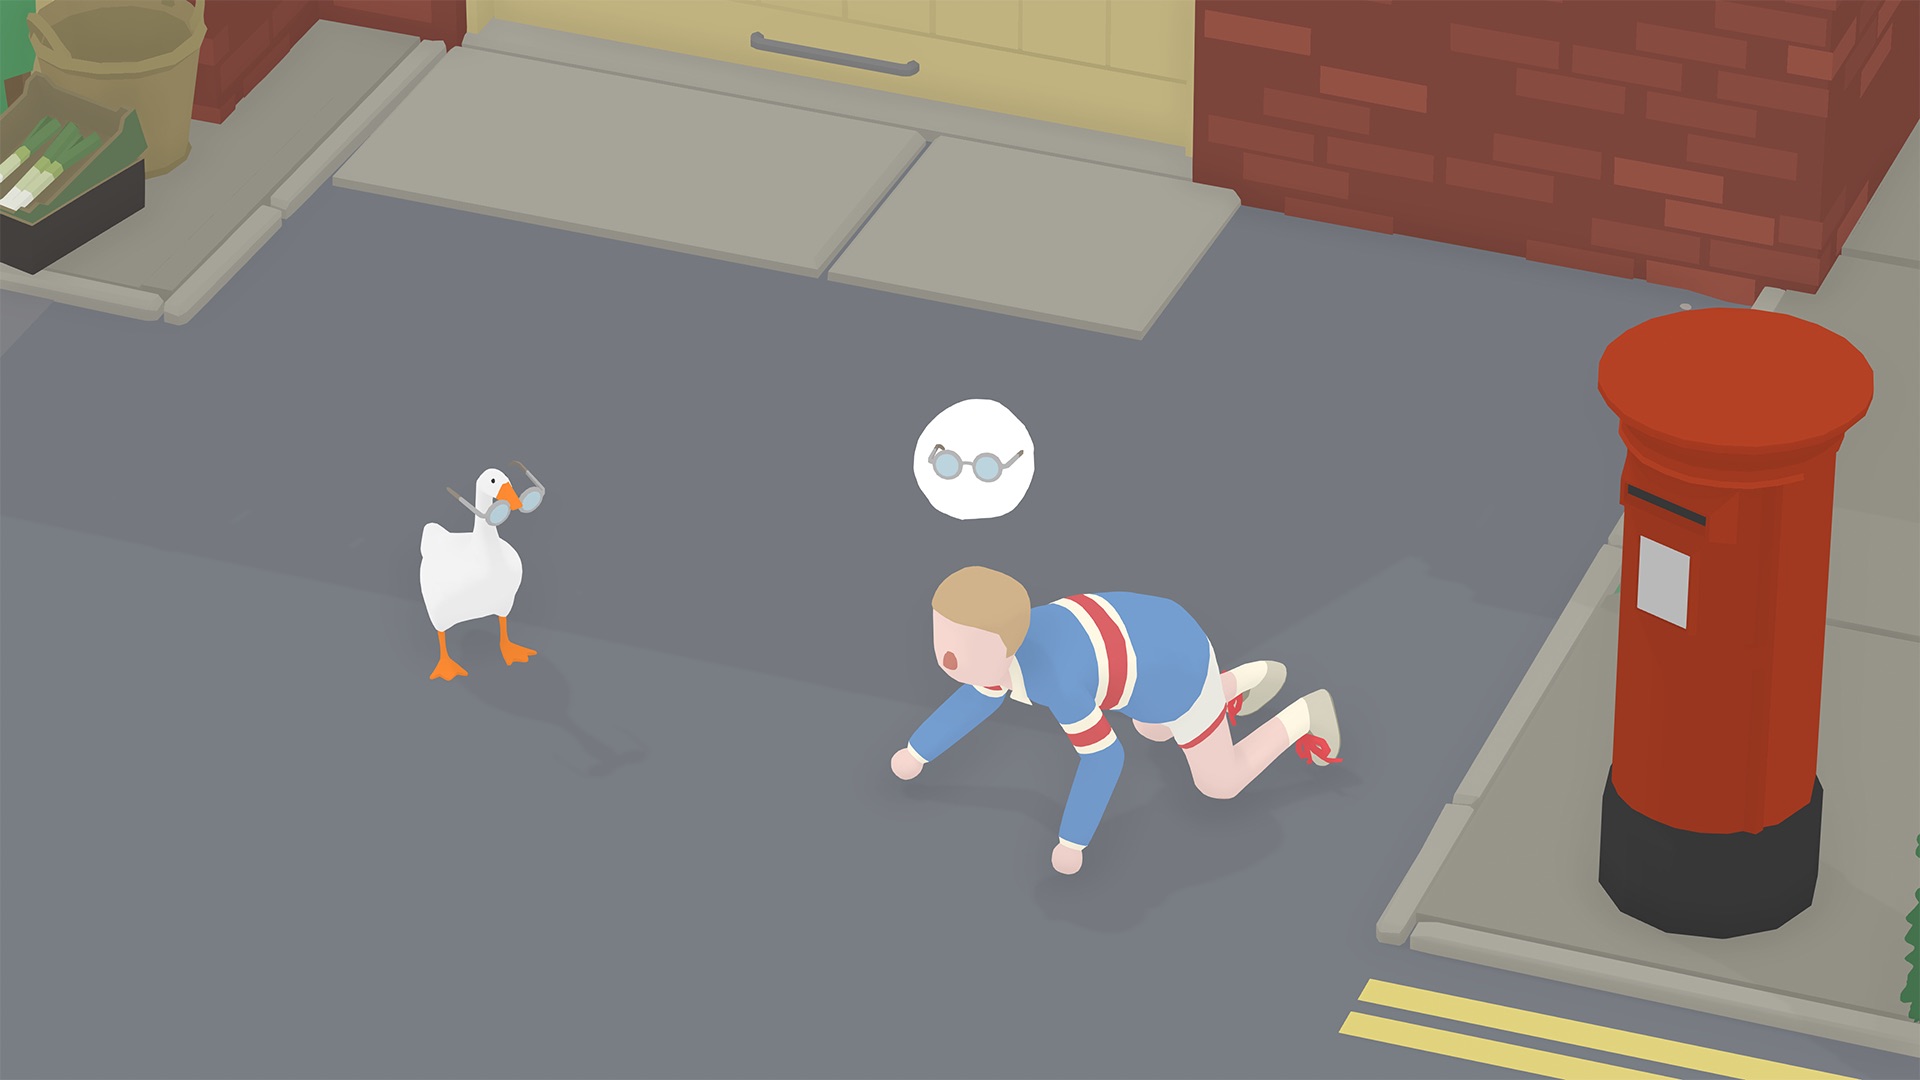 Untitled Goose Game Screenshot 10